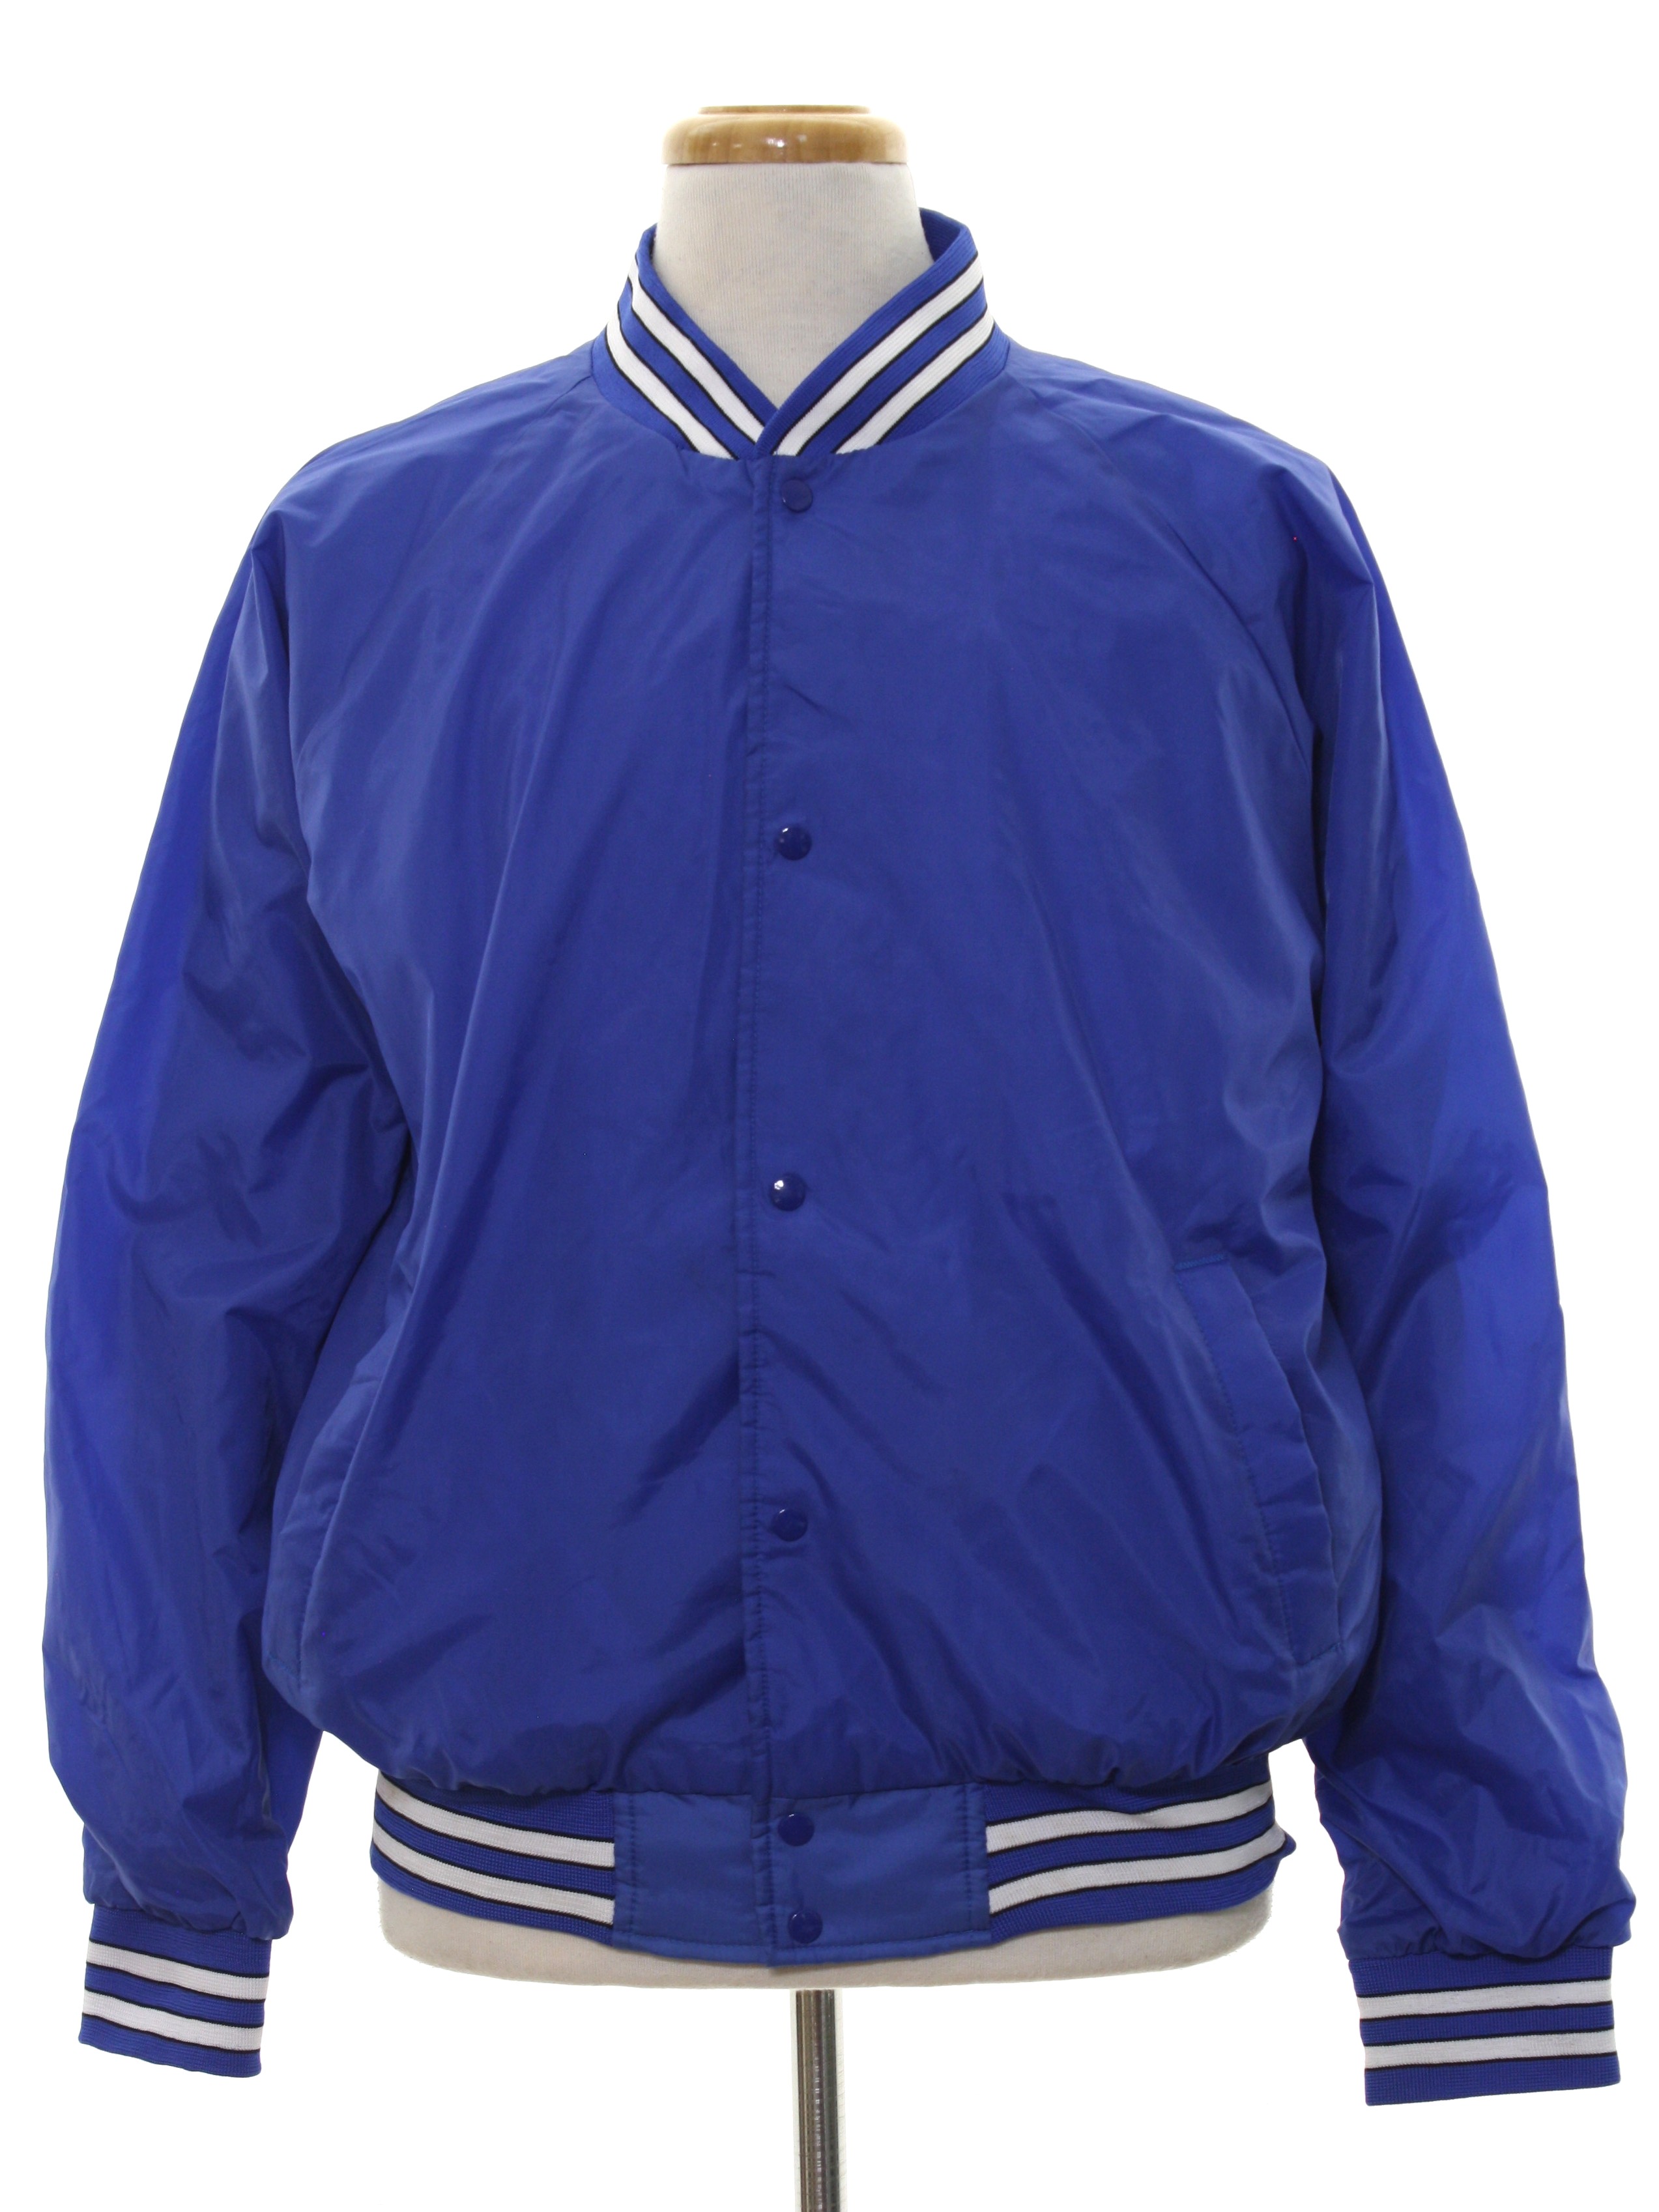 Retro 1990's Jacket (Haband) : 90s -Haband- Mens royal blue background ...